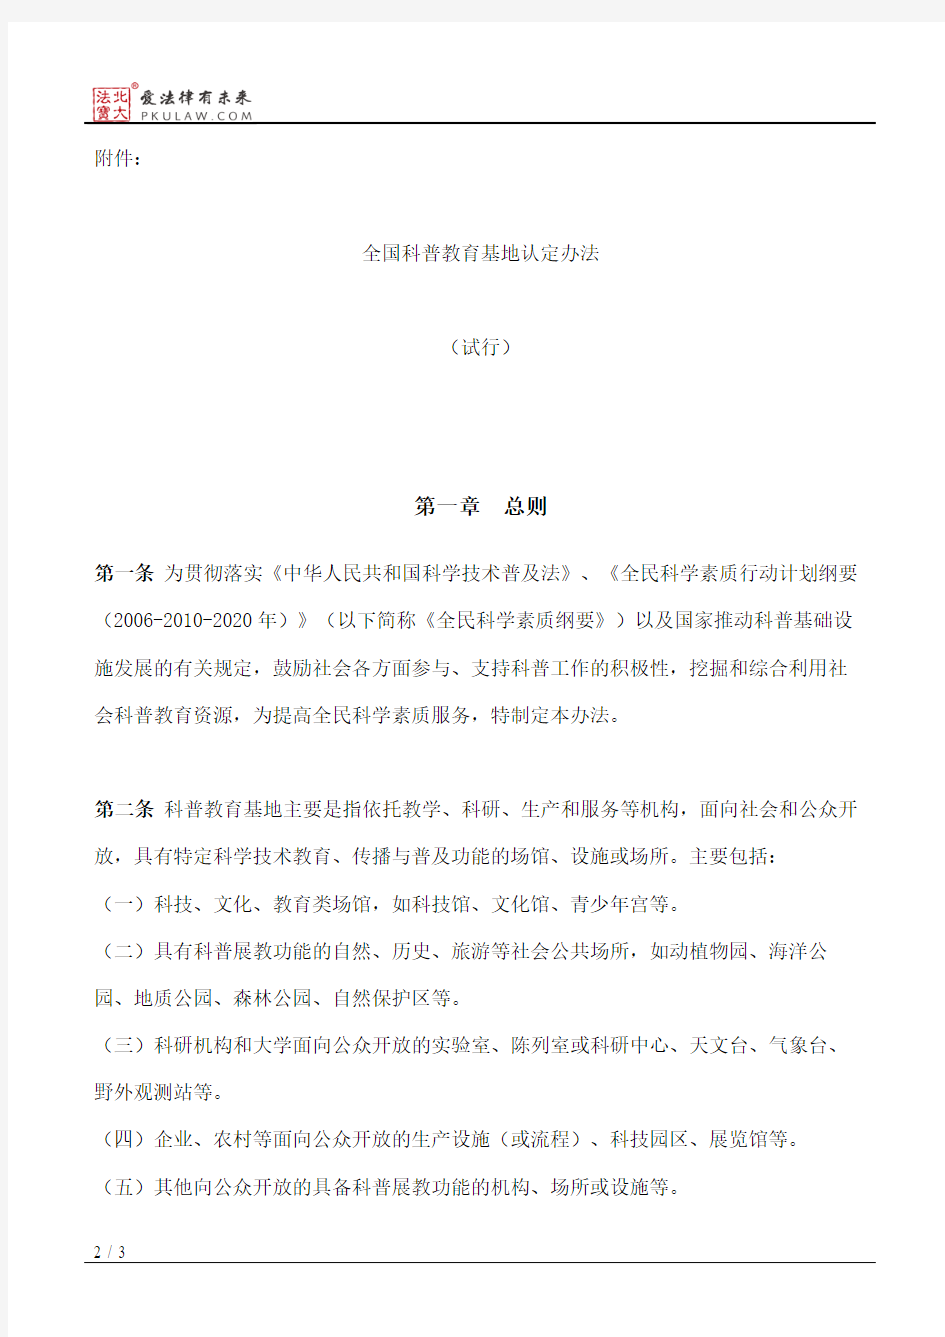 中国科协办公厅关于印发《全国科普教育基地认定办法》的通知